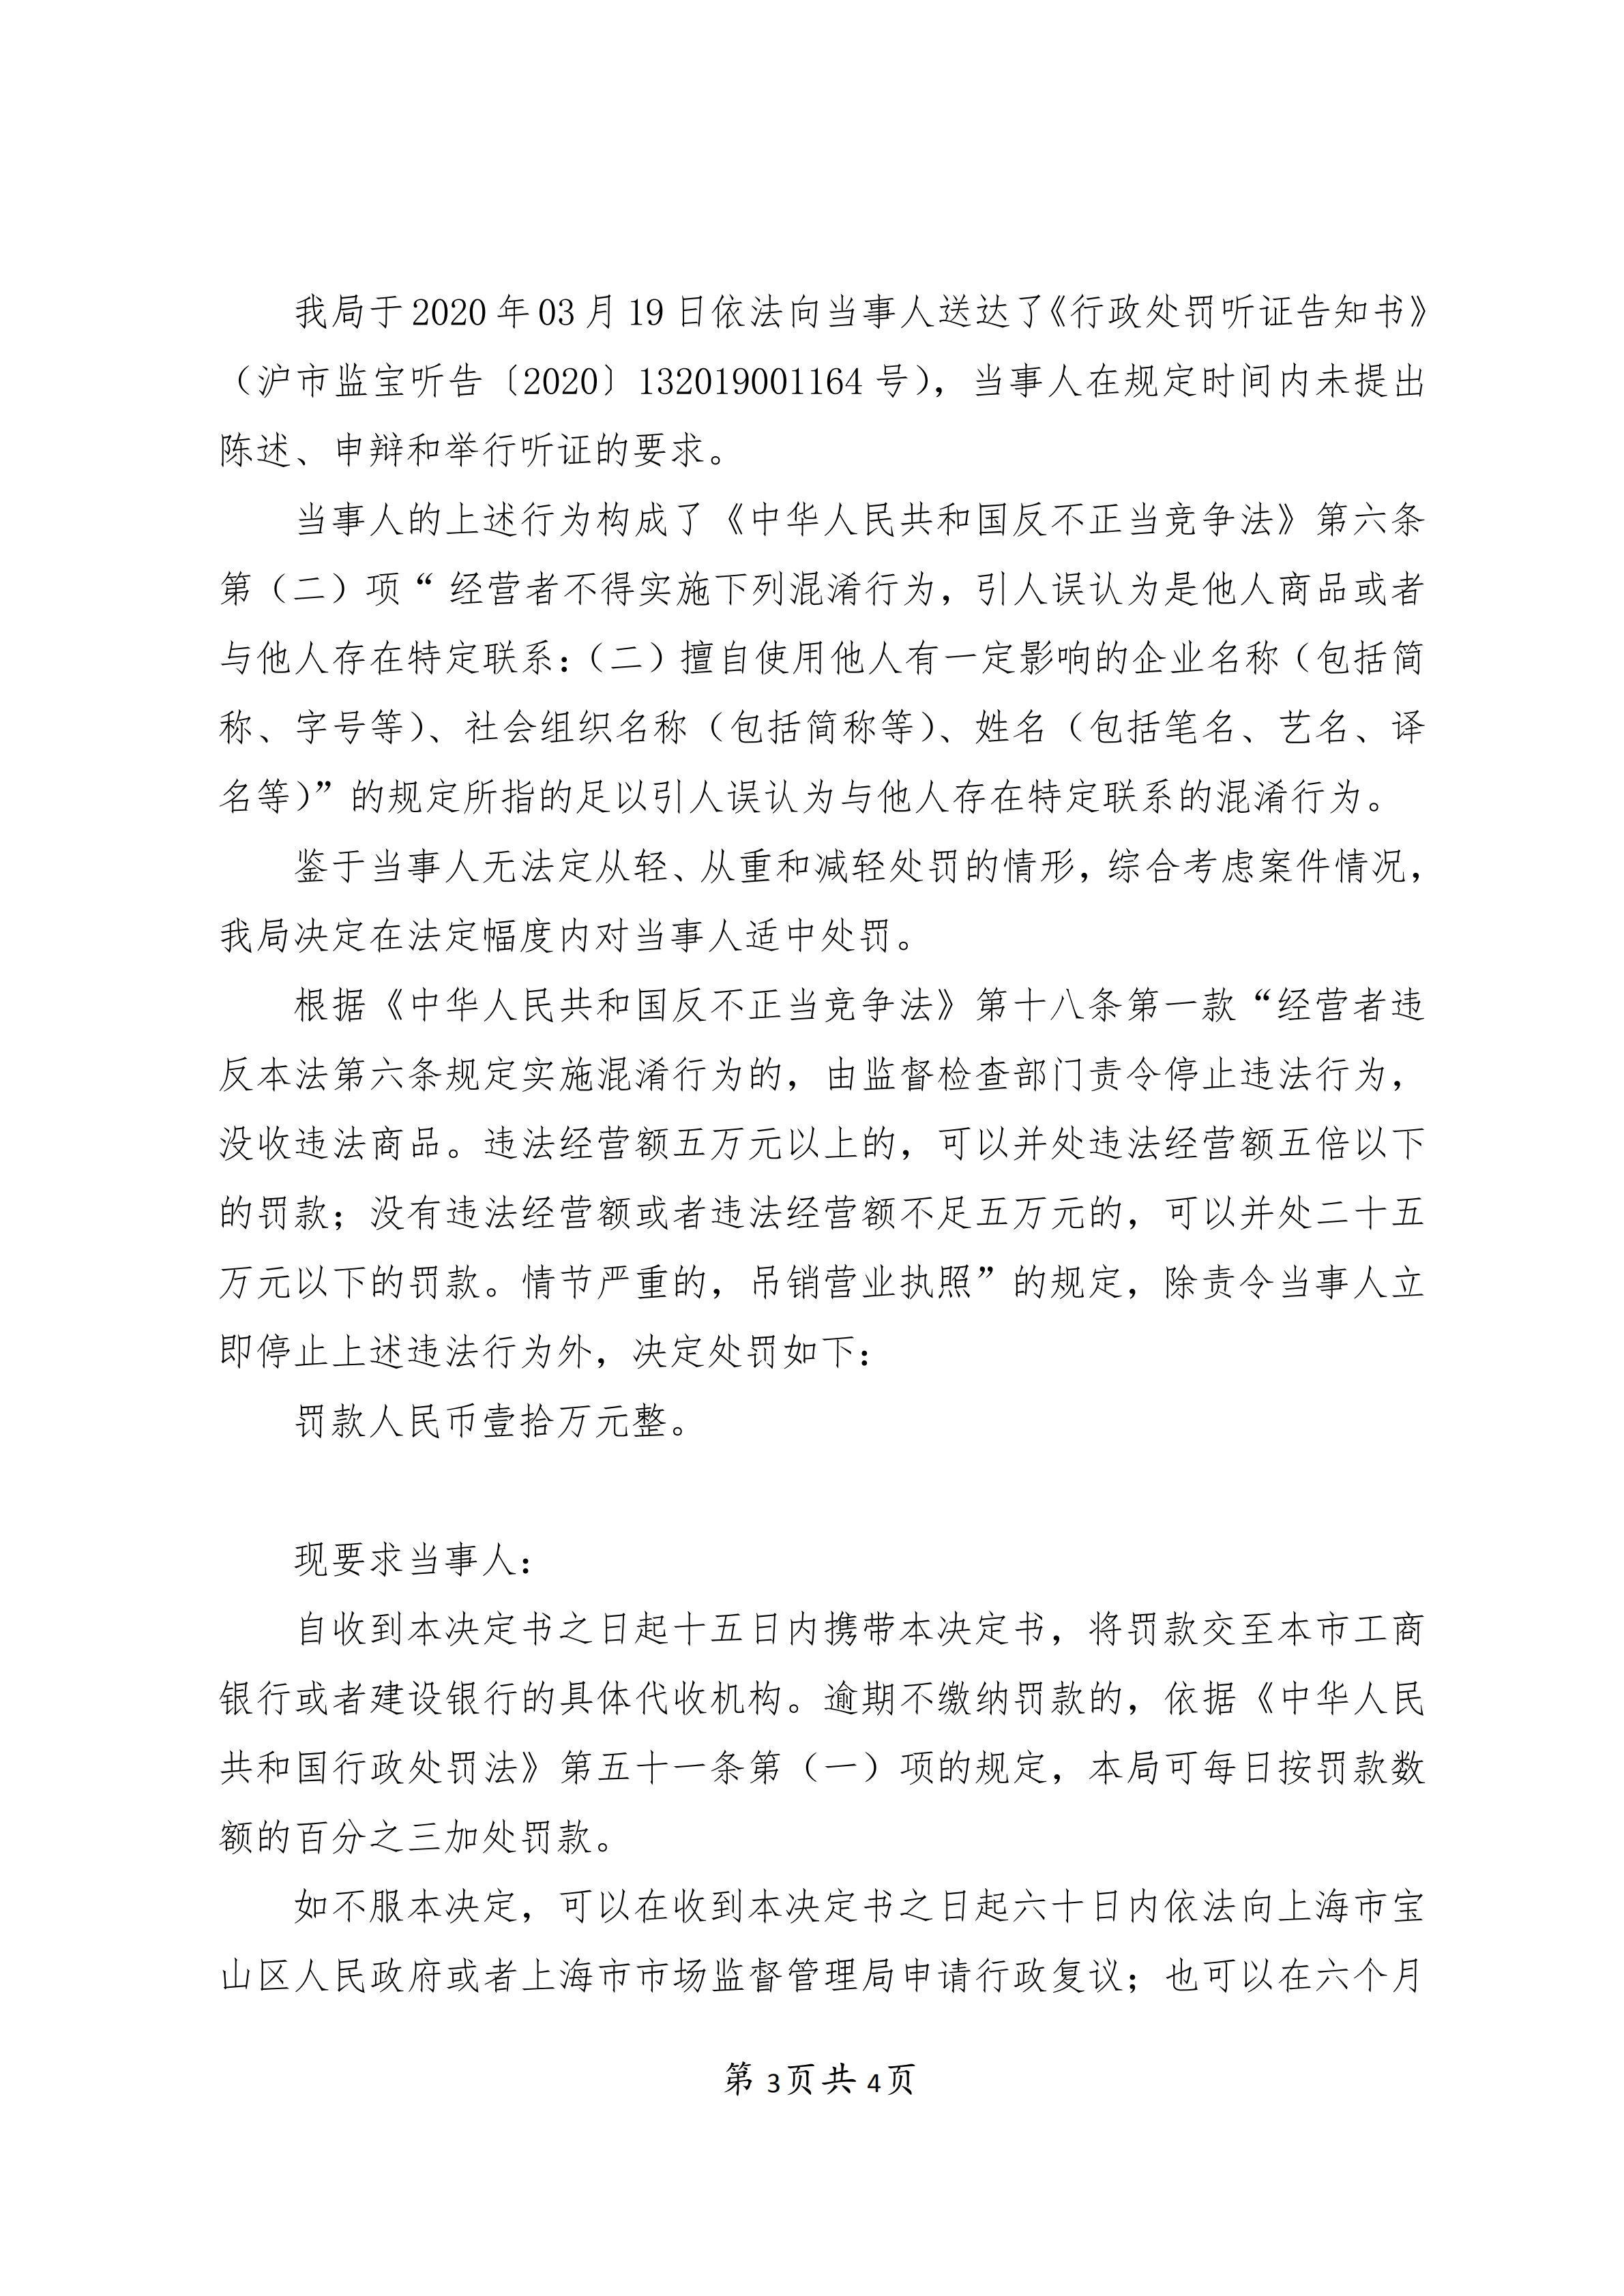 上海梦生殡葬用品销售有限公司不正当竞争案-行政处罚书(1)_02.png